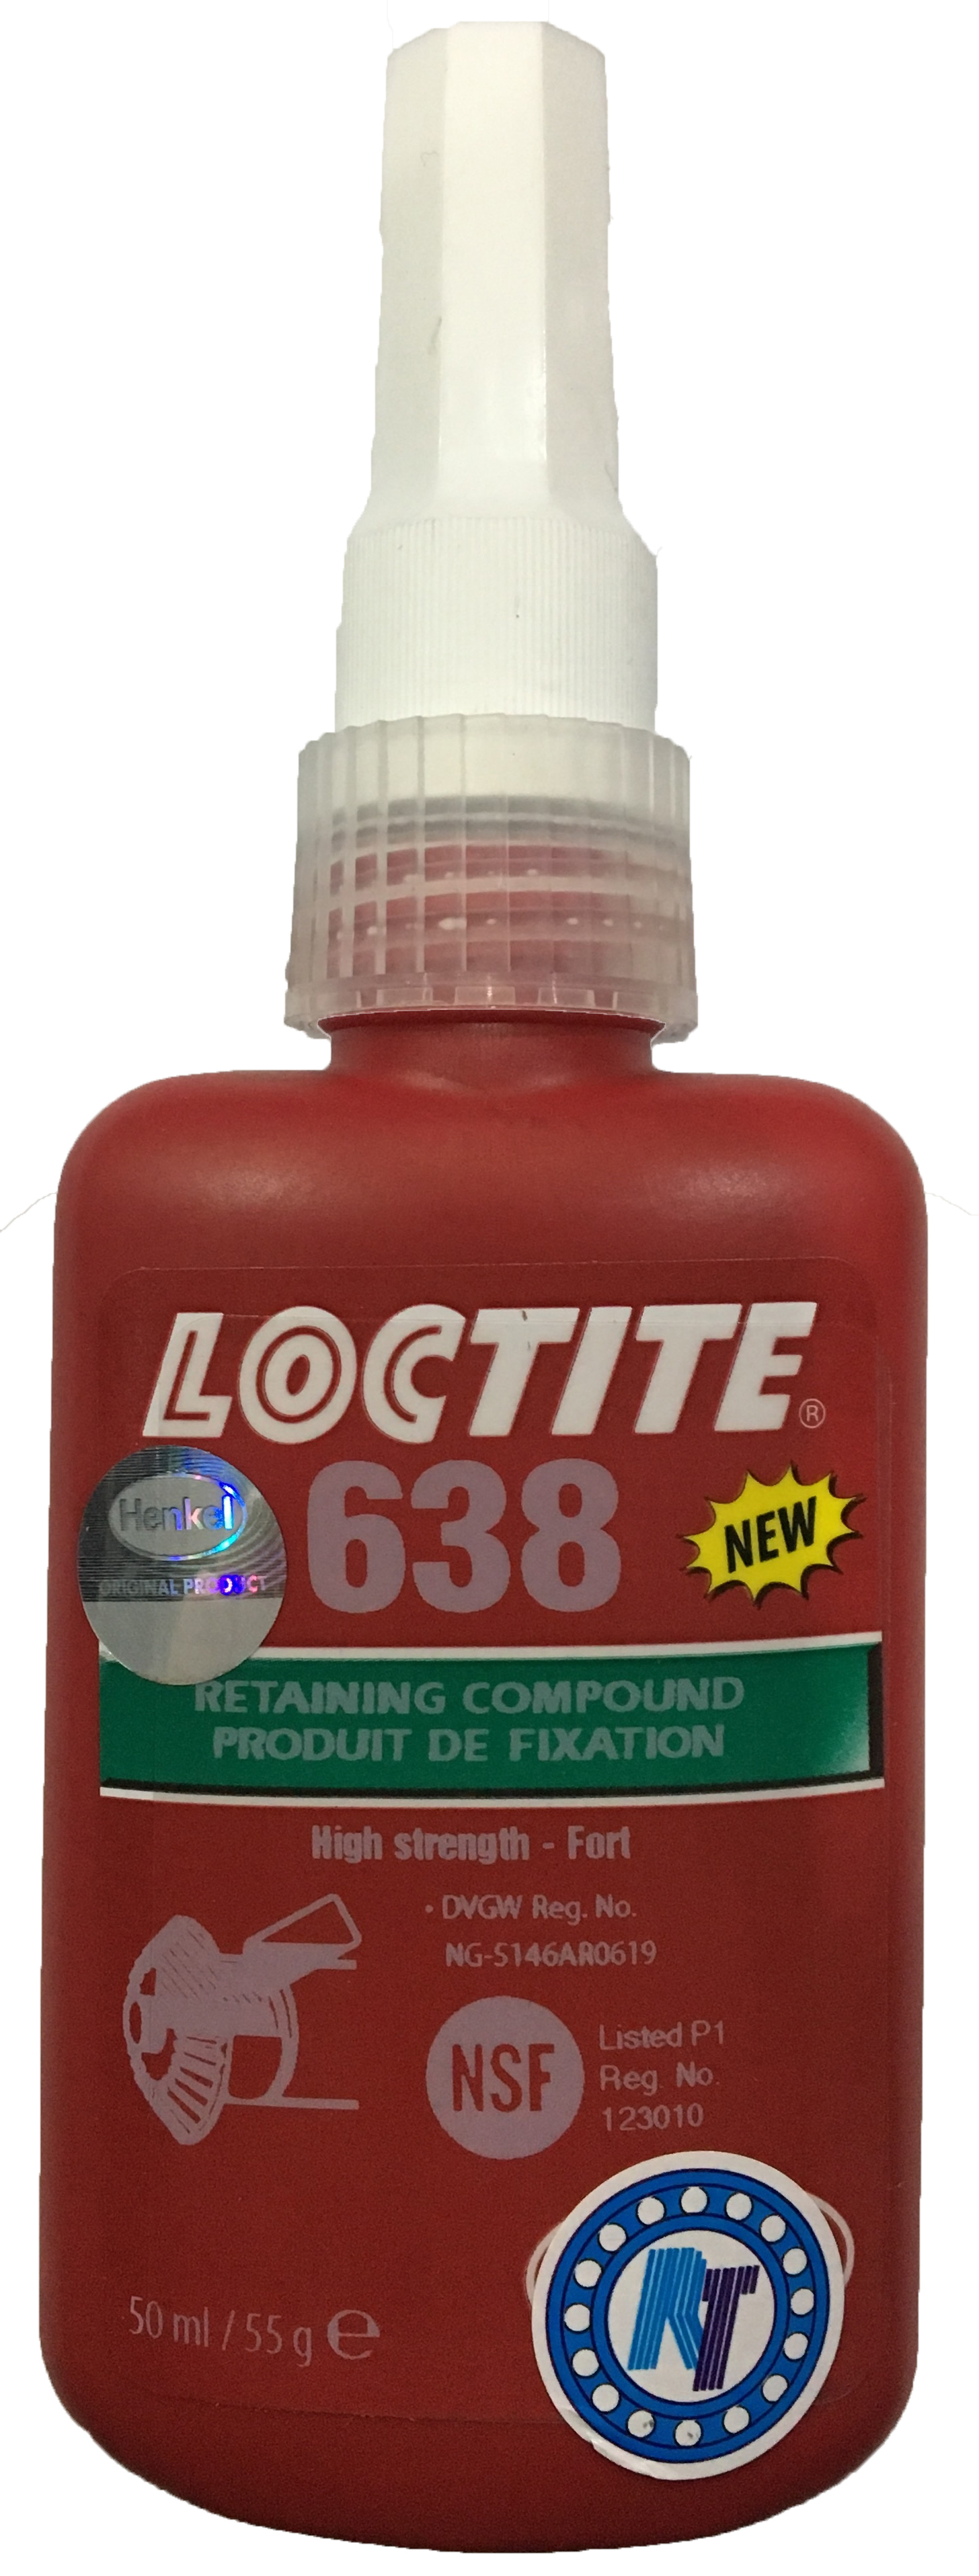 Loctite638,1803363,loctite